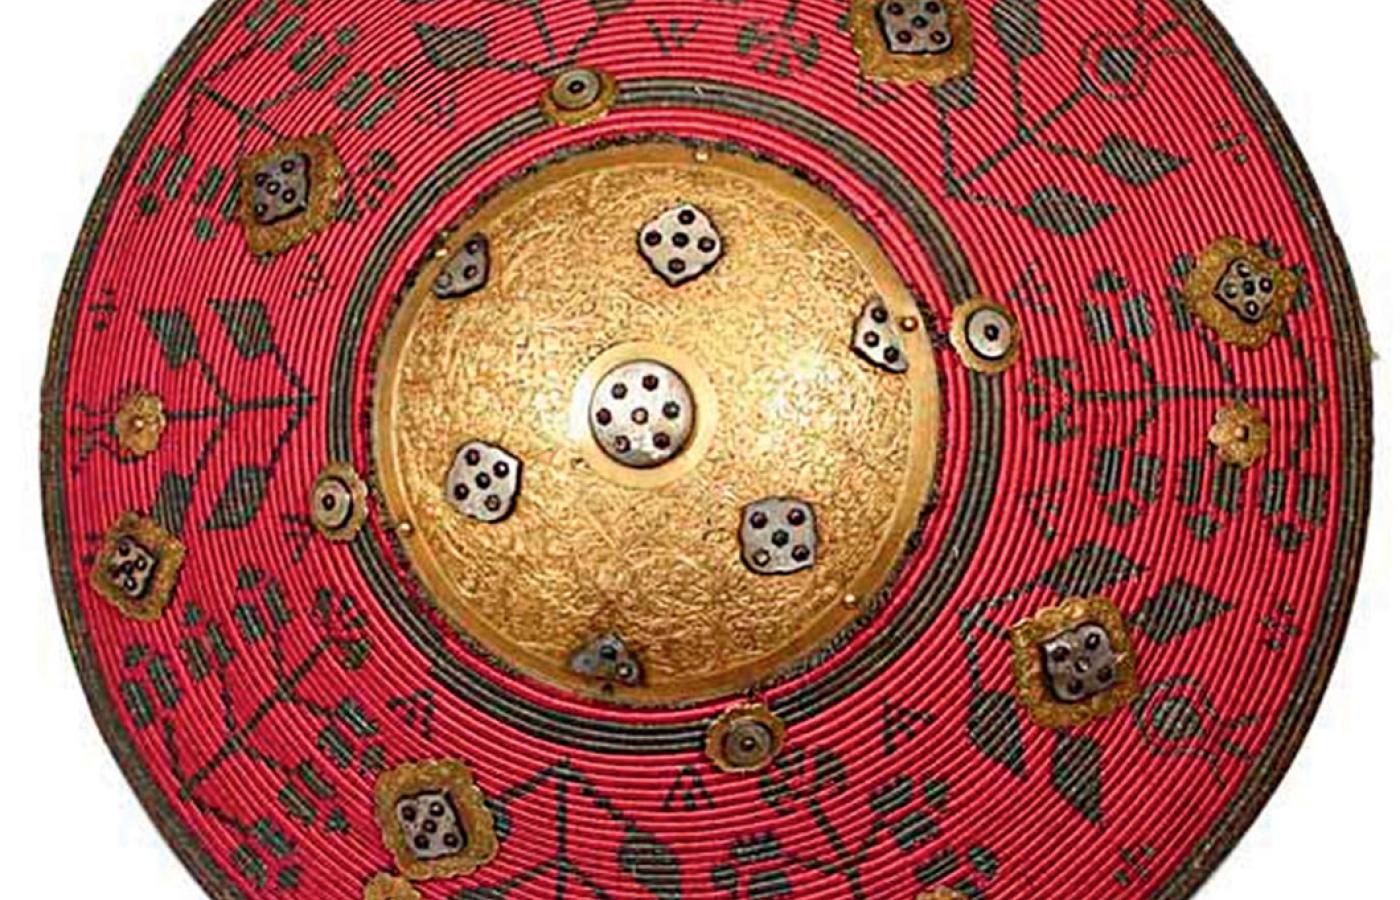 Kałkan, tarcza używana przez polską kawalerię w XVII i XVIII w. Wzorowana na perskich, z witek figowca krytych jedwabiem.